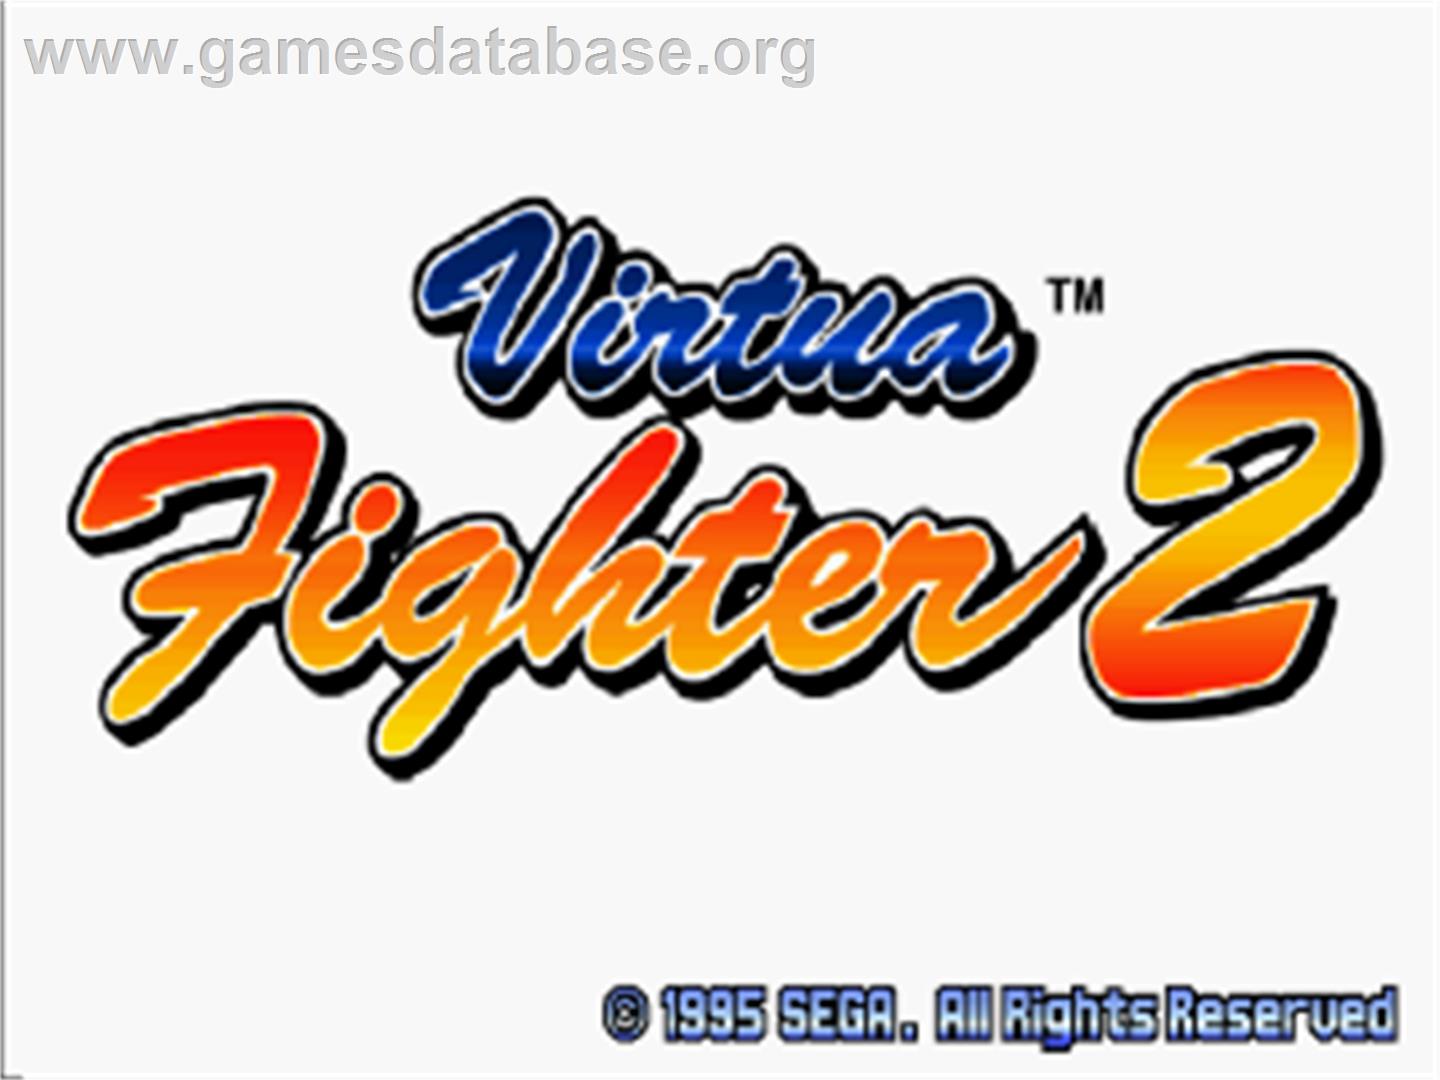 Virtua Fighter 2 - Sega Saturn - Artwork - Title Screen